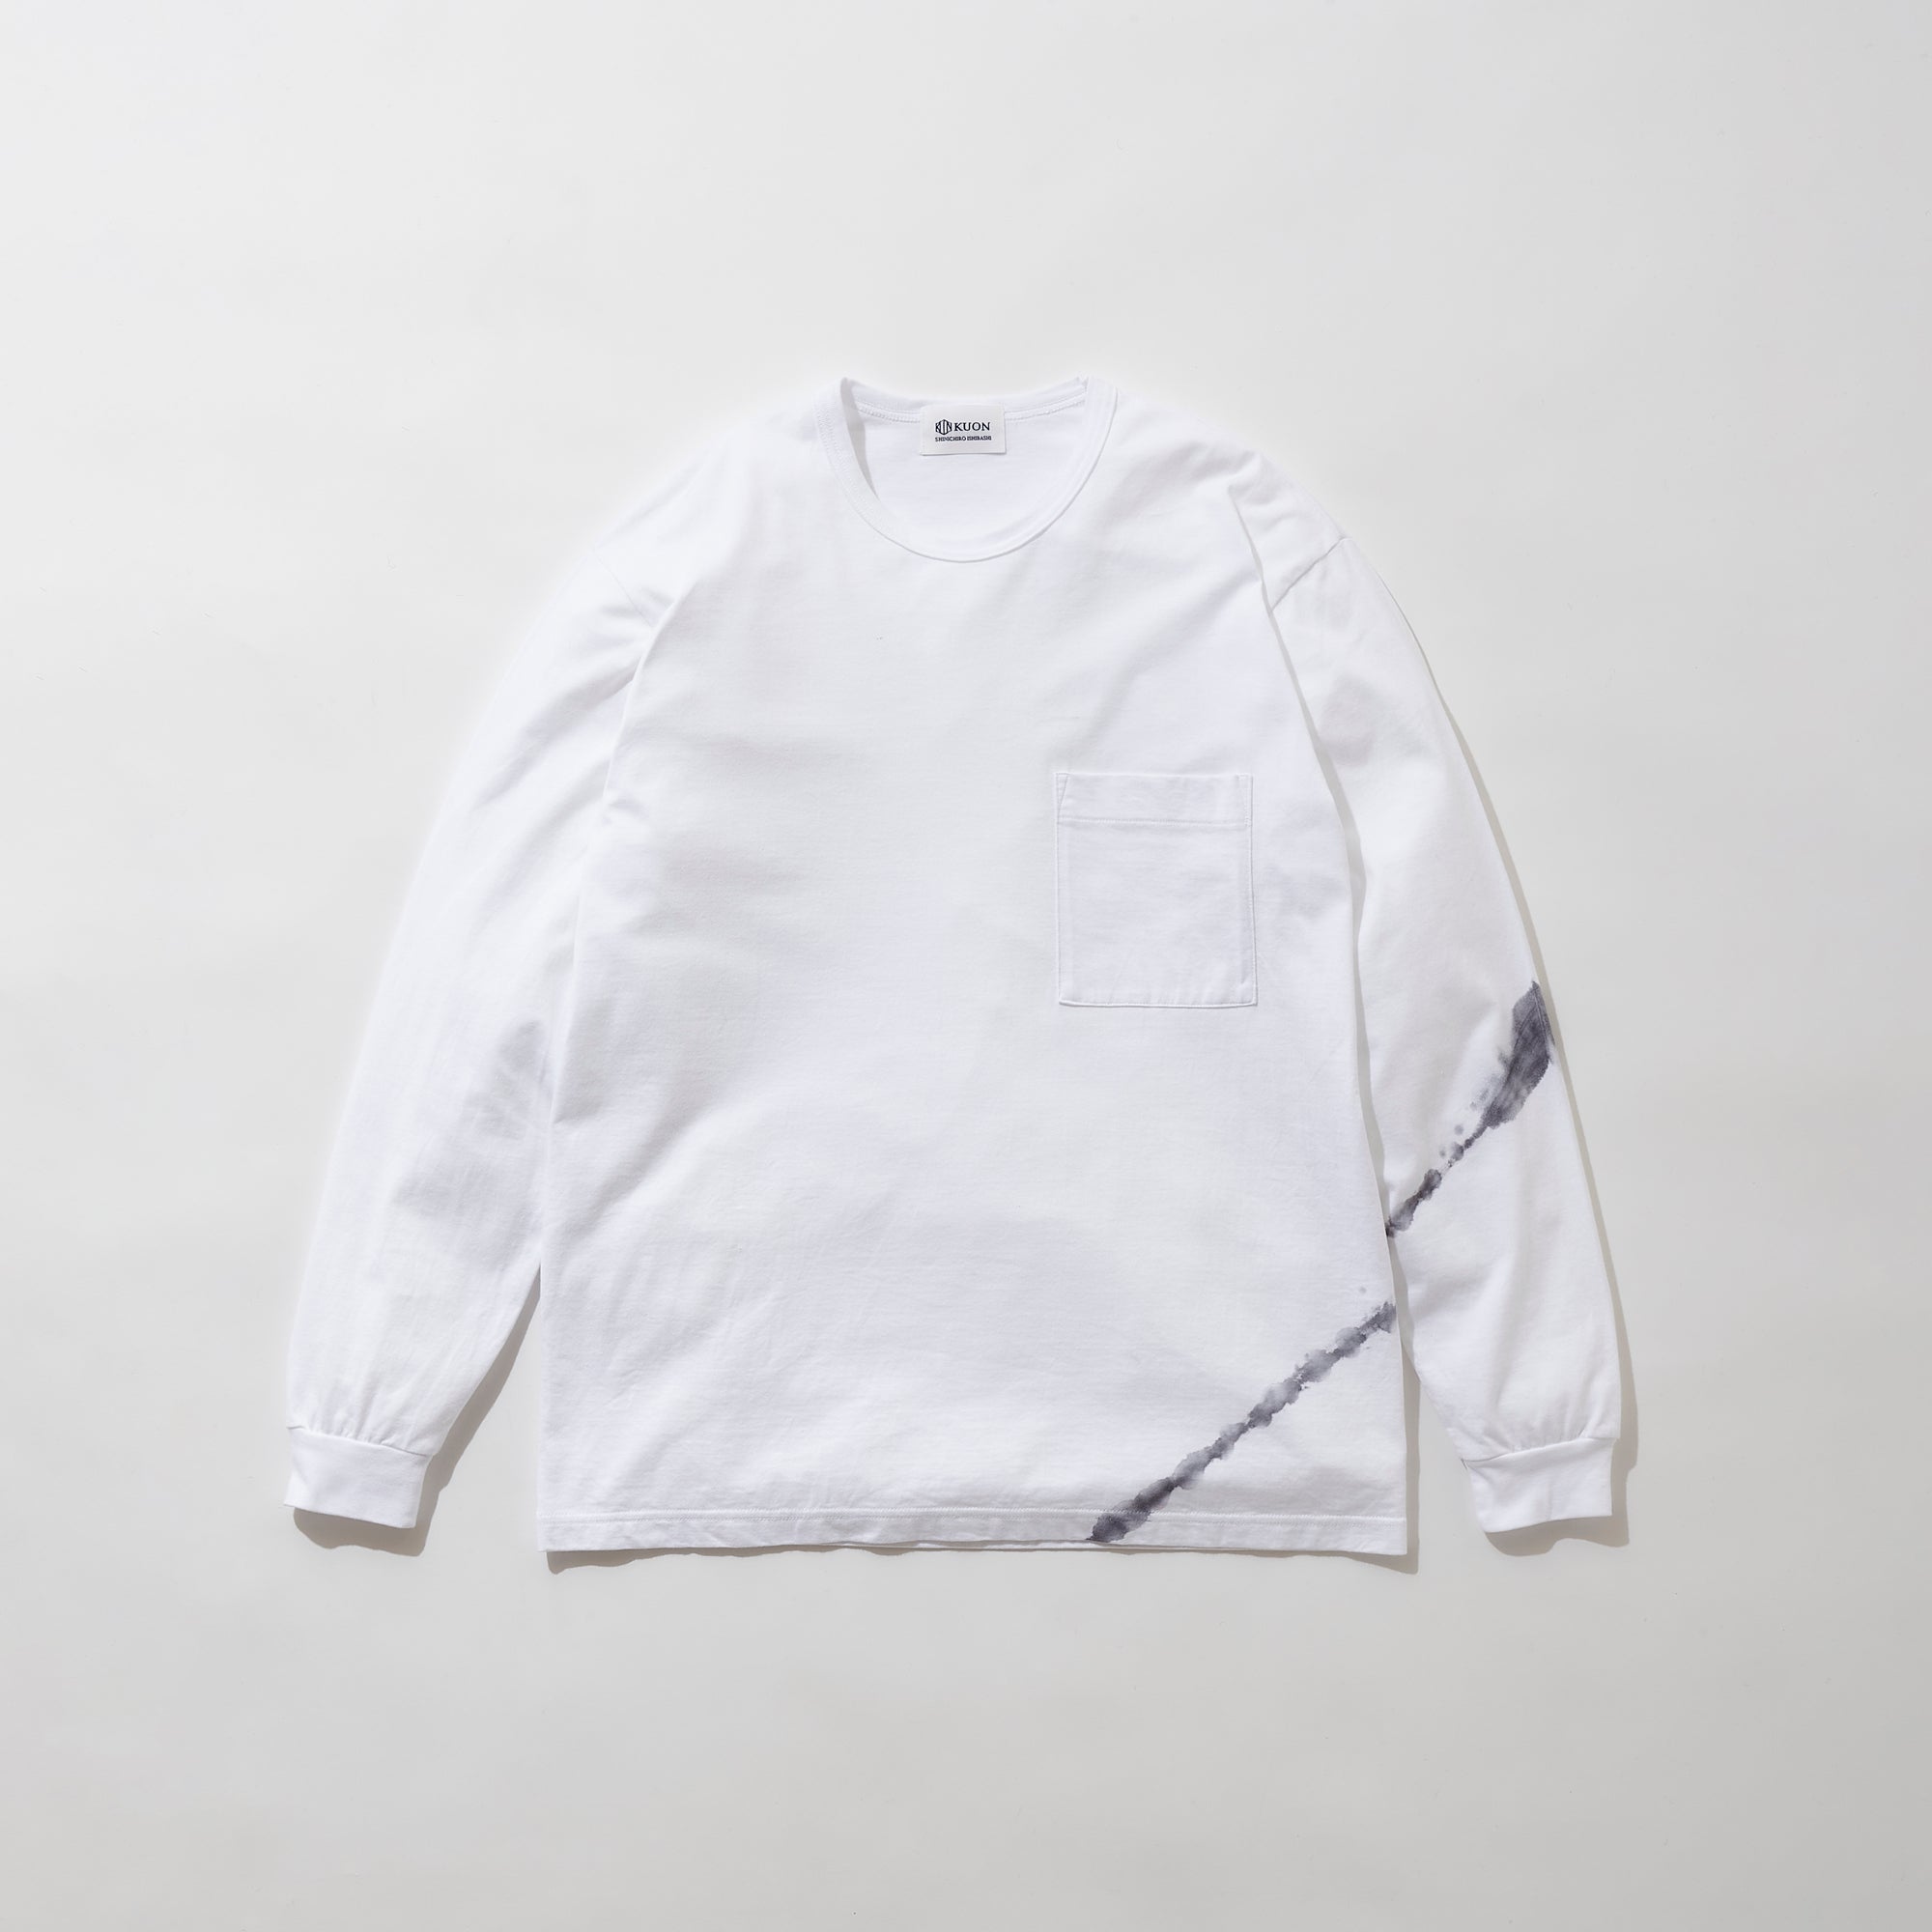 Arimatsu Shibori Long Sleeve T-Shirt